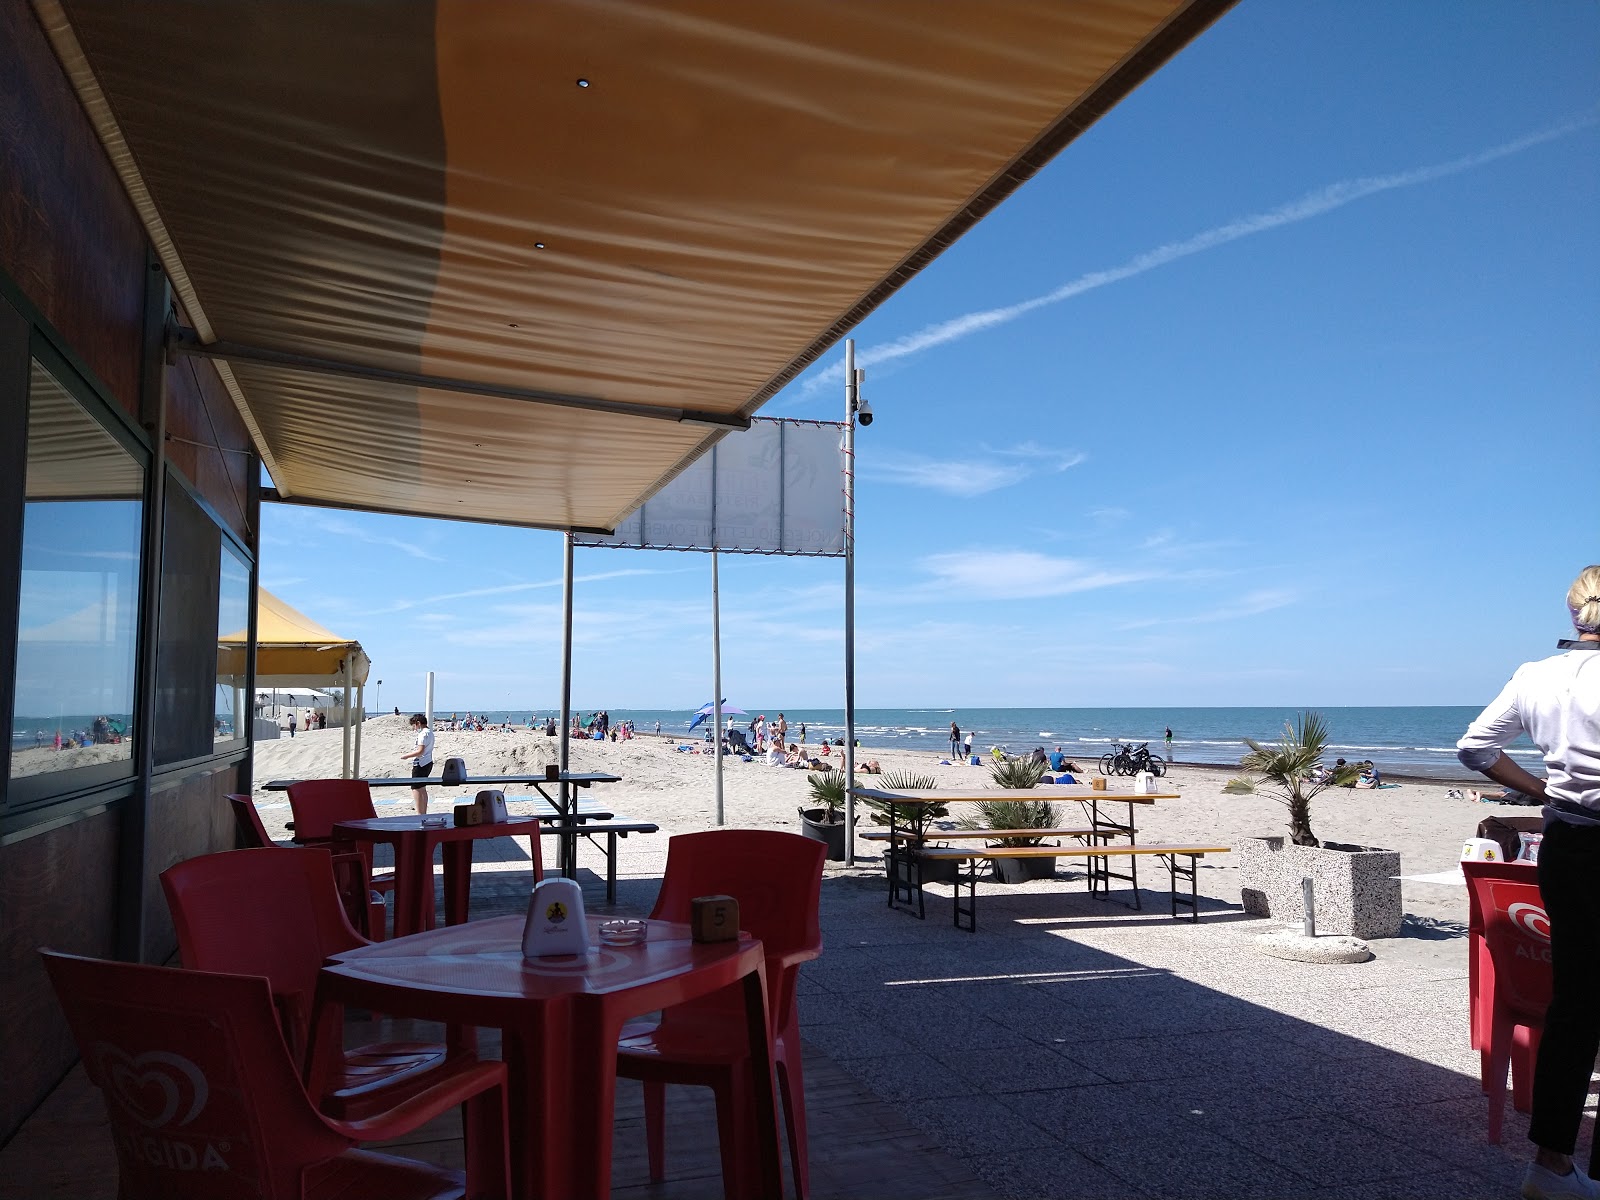 Foto de Playa Boccasette - lugar popular entre los conocedores del relax